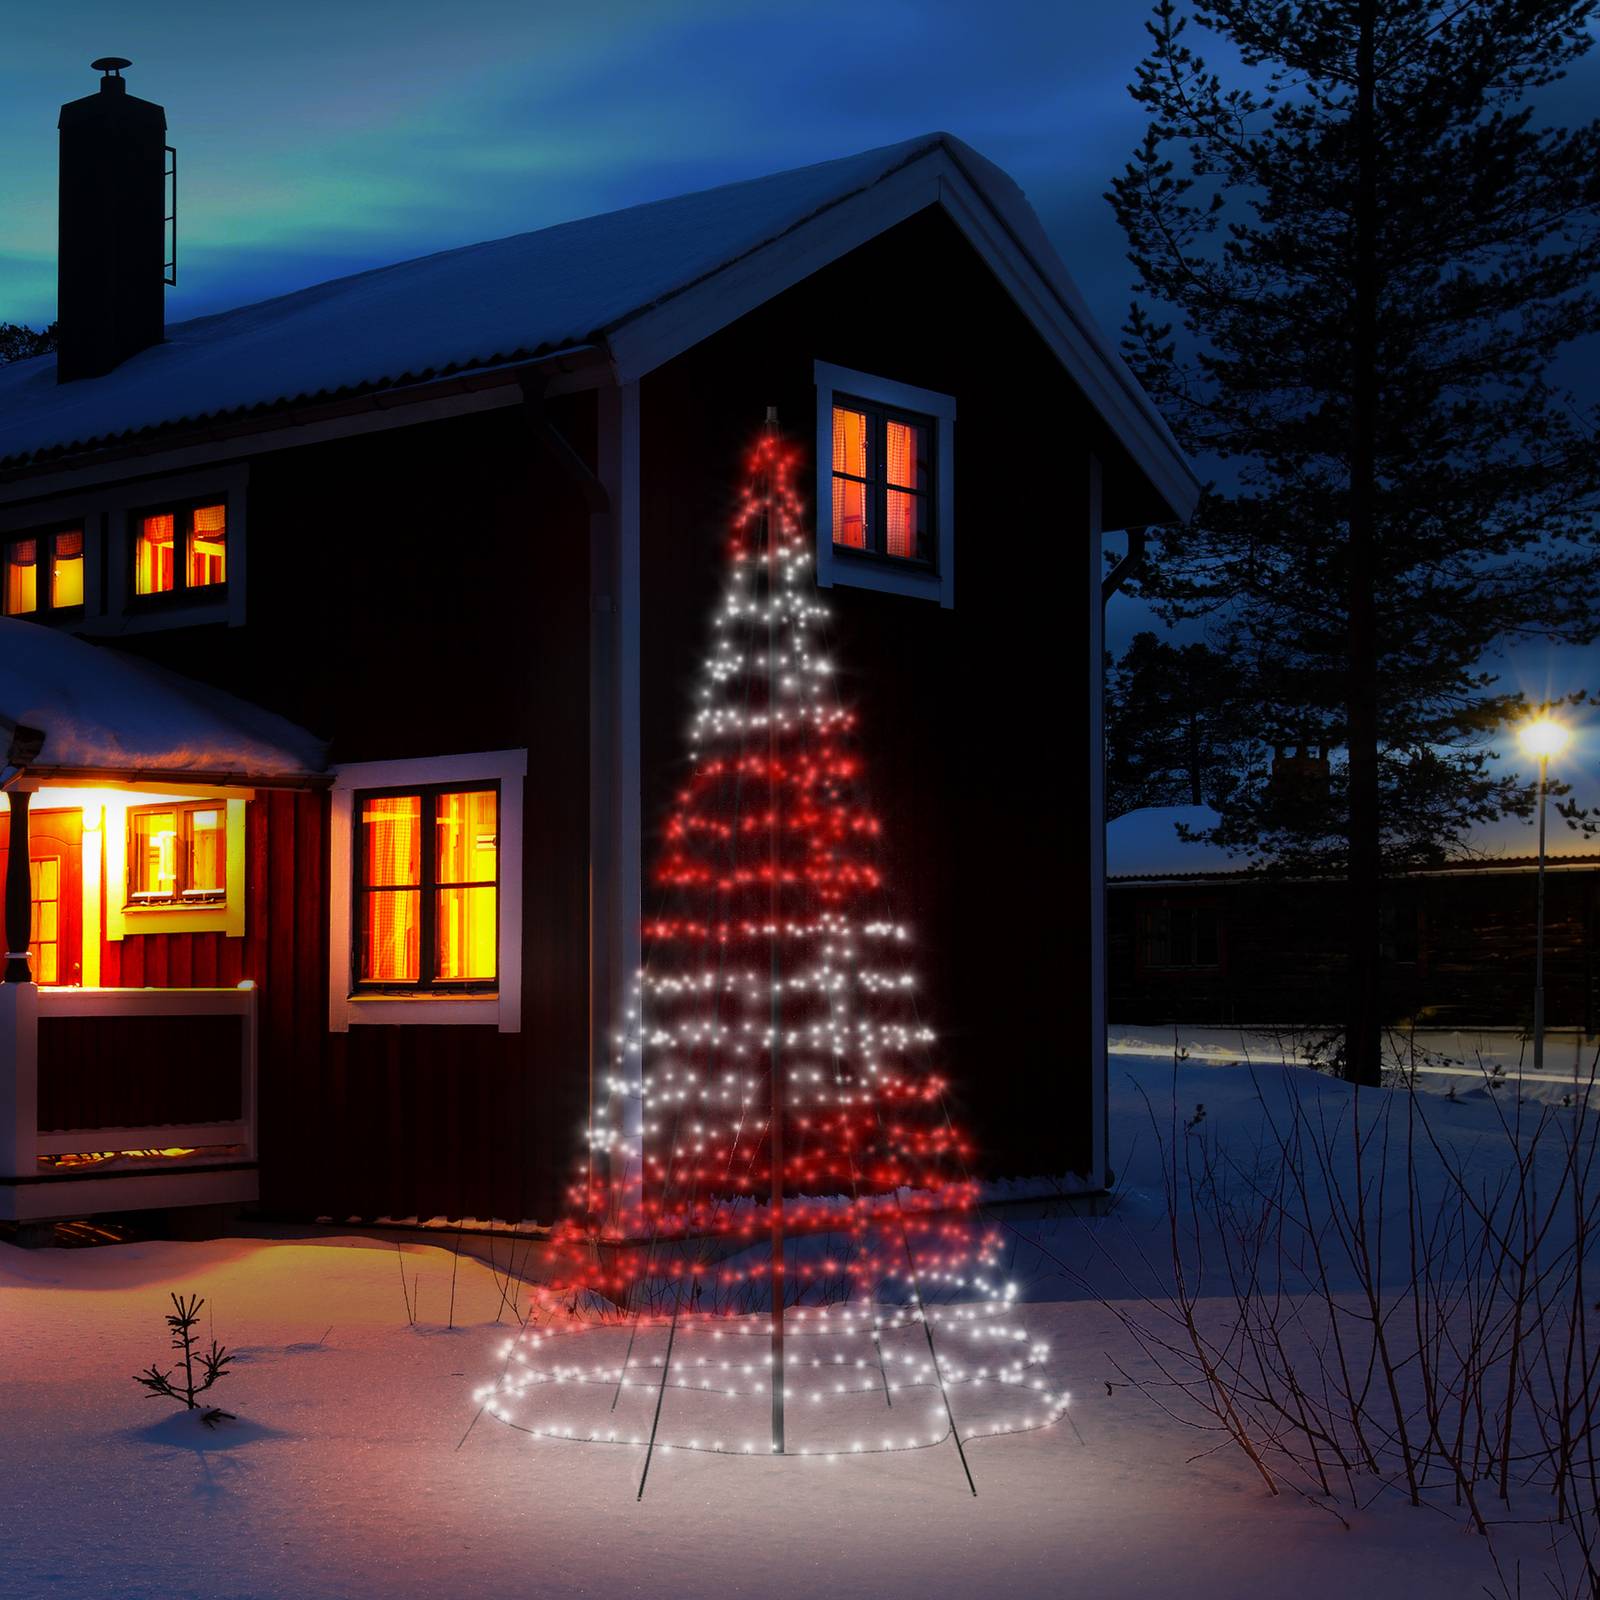 twinkly Třpytivý světelný strom pro venkovní použití, RGBW, výška 400 cm